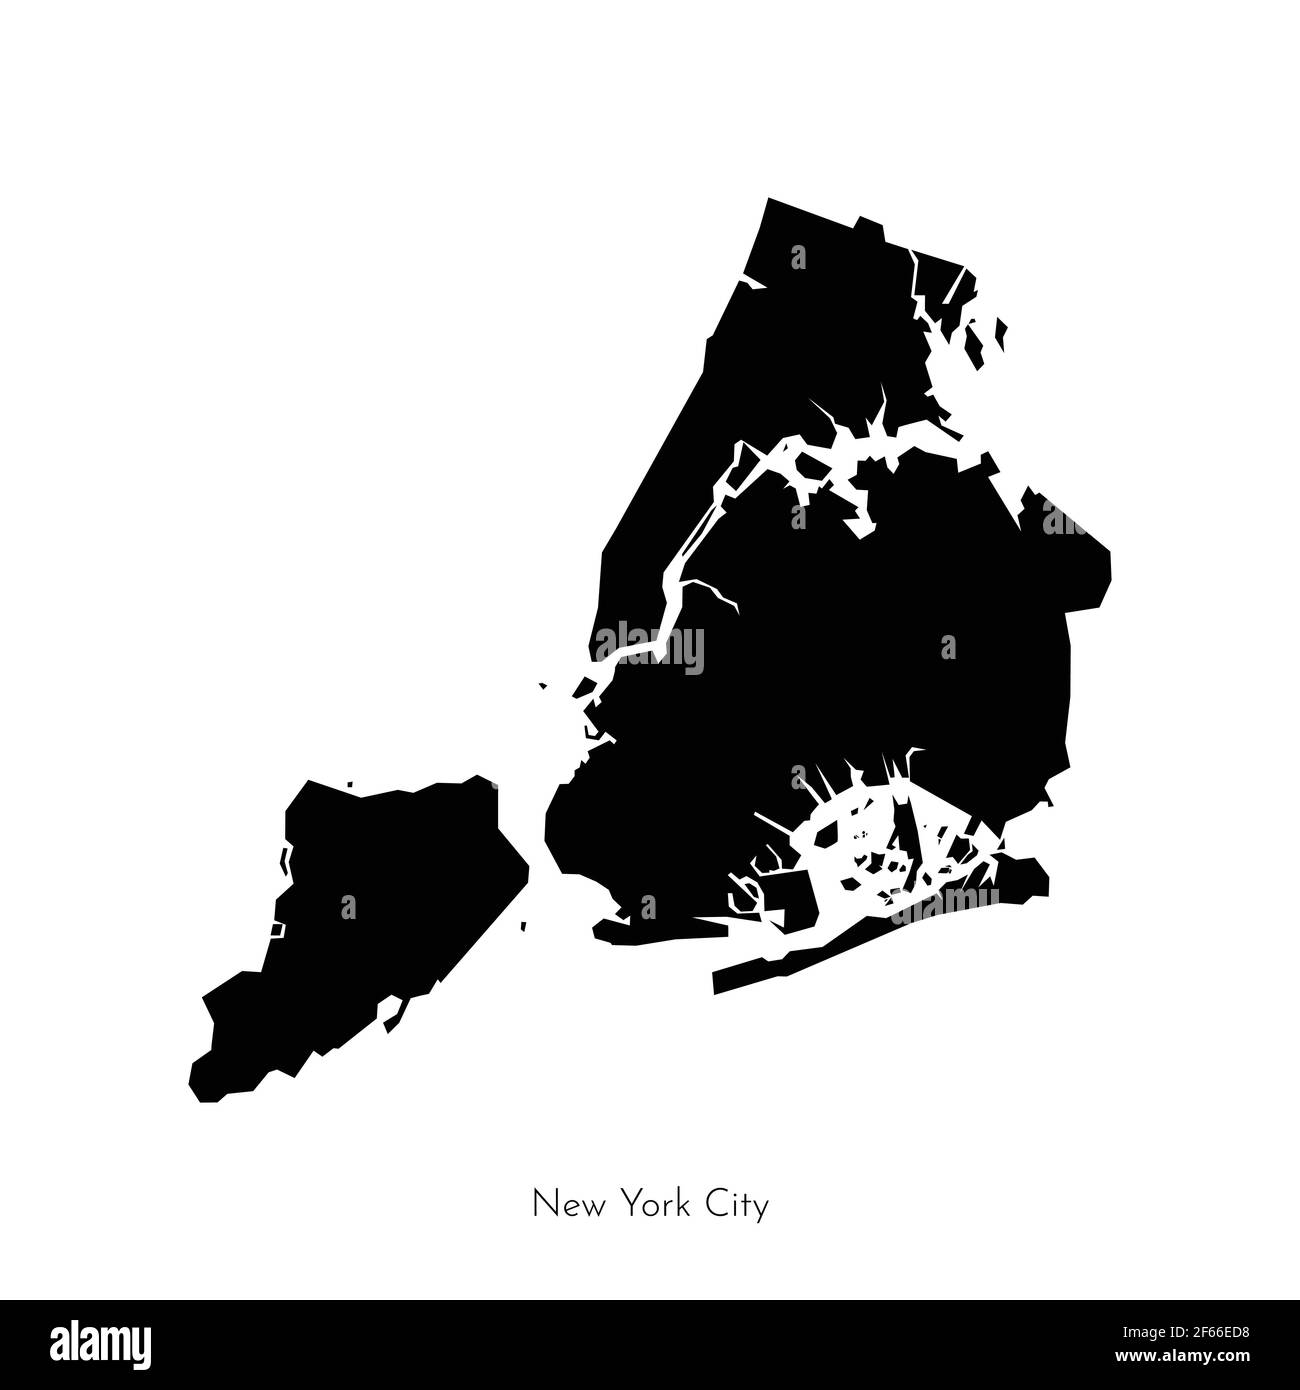 Illustrazione vettoriale isolata con forma geometrica semplificata della mappa di New York City (città negli Stati Uniti). Silhouette nera della Grande Mela (NY Illustrazione Vettoriale